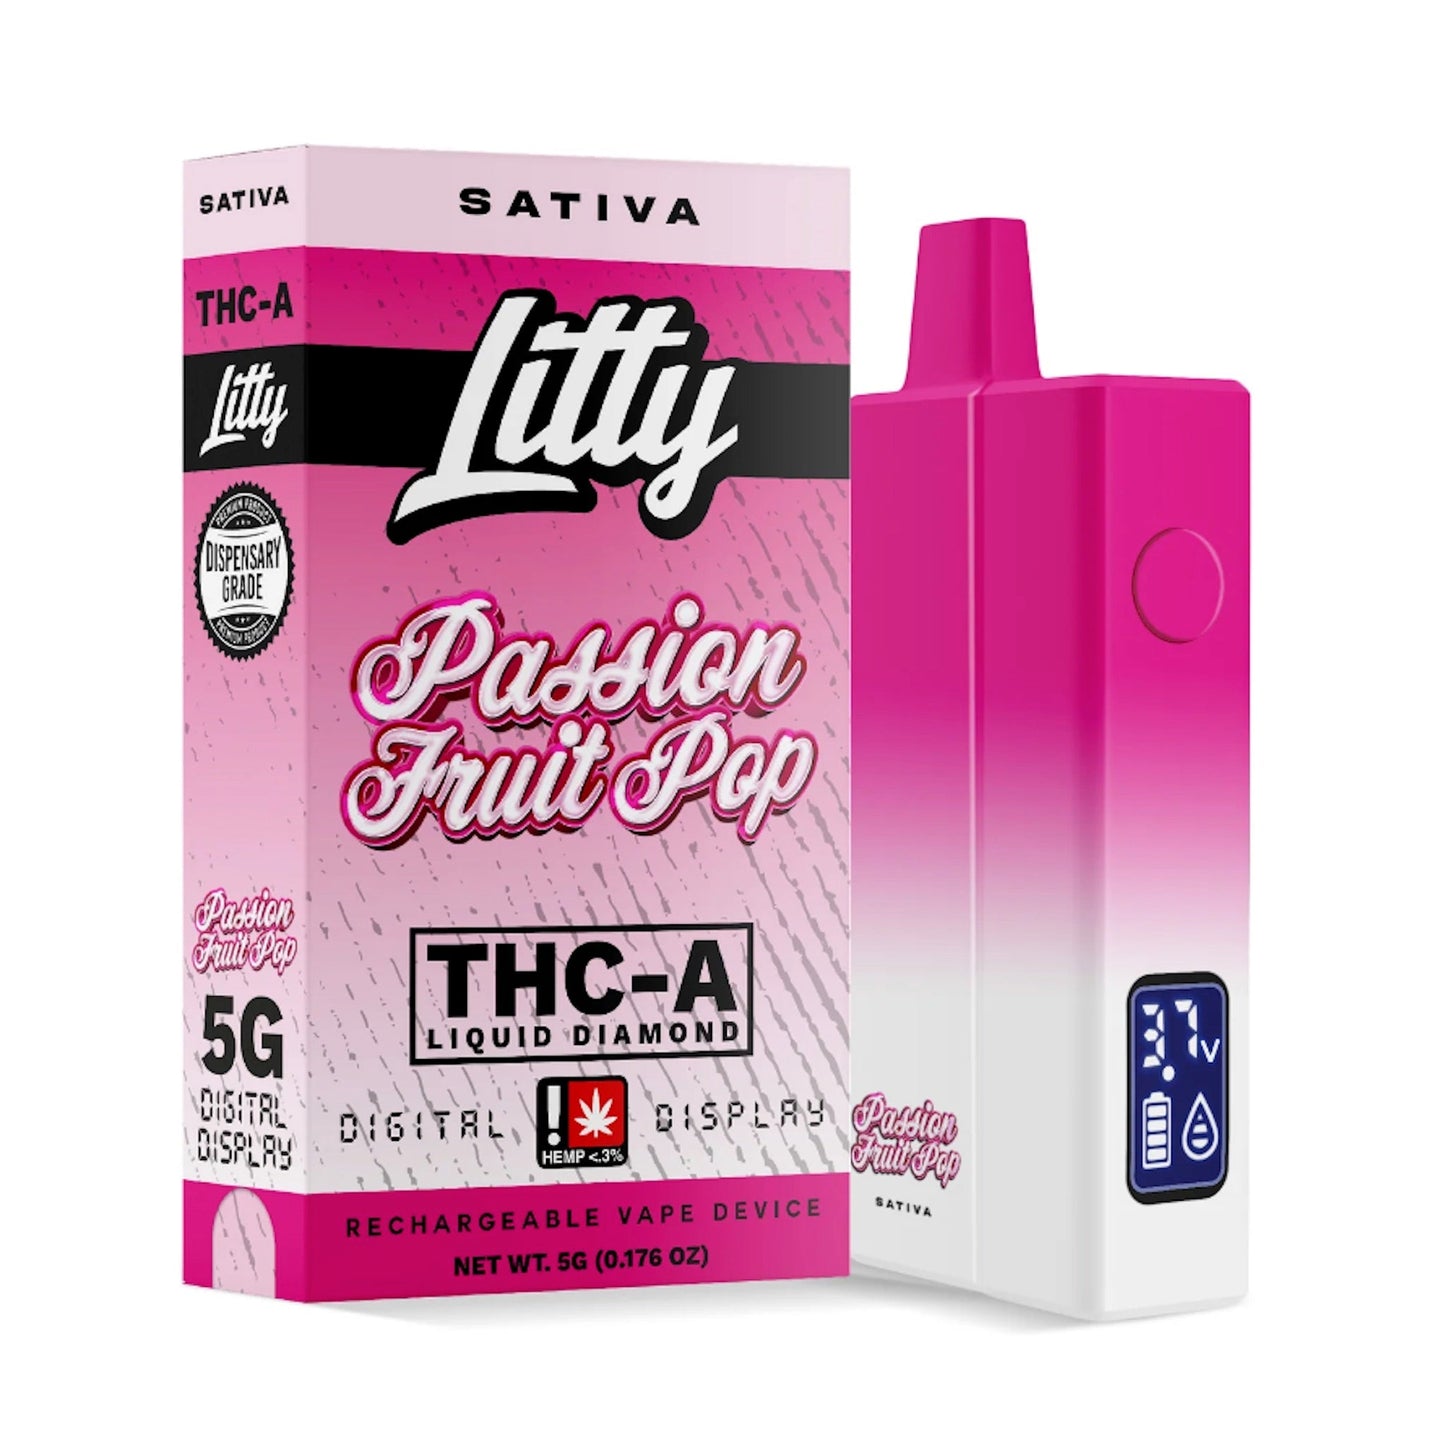 Litty THC-A Liquid Diamonds Vaporizer - 5000mg